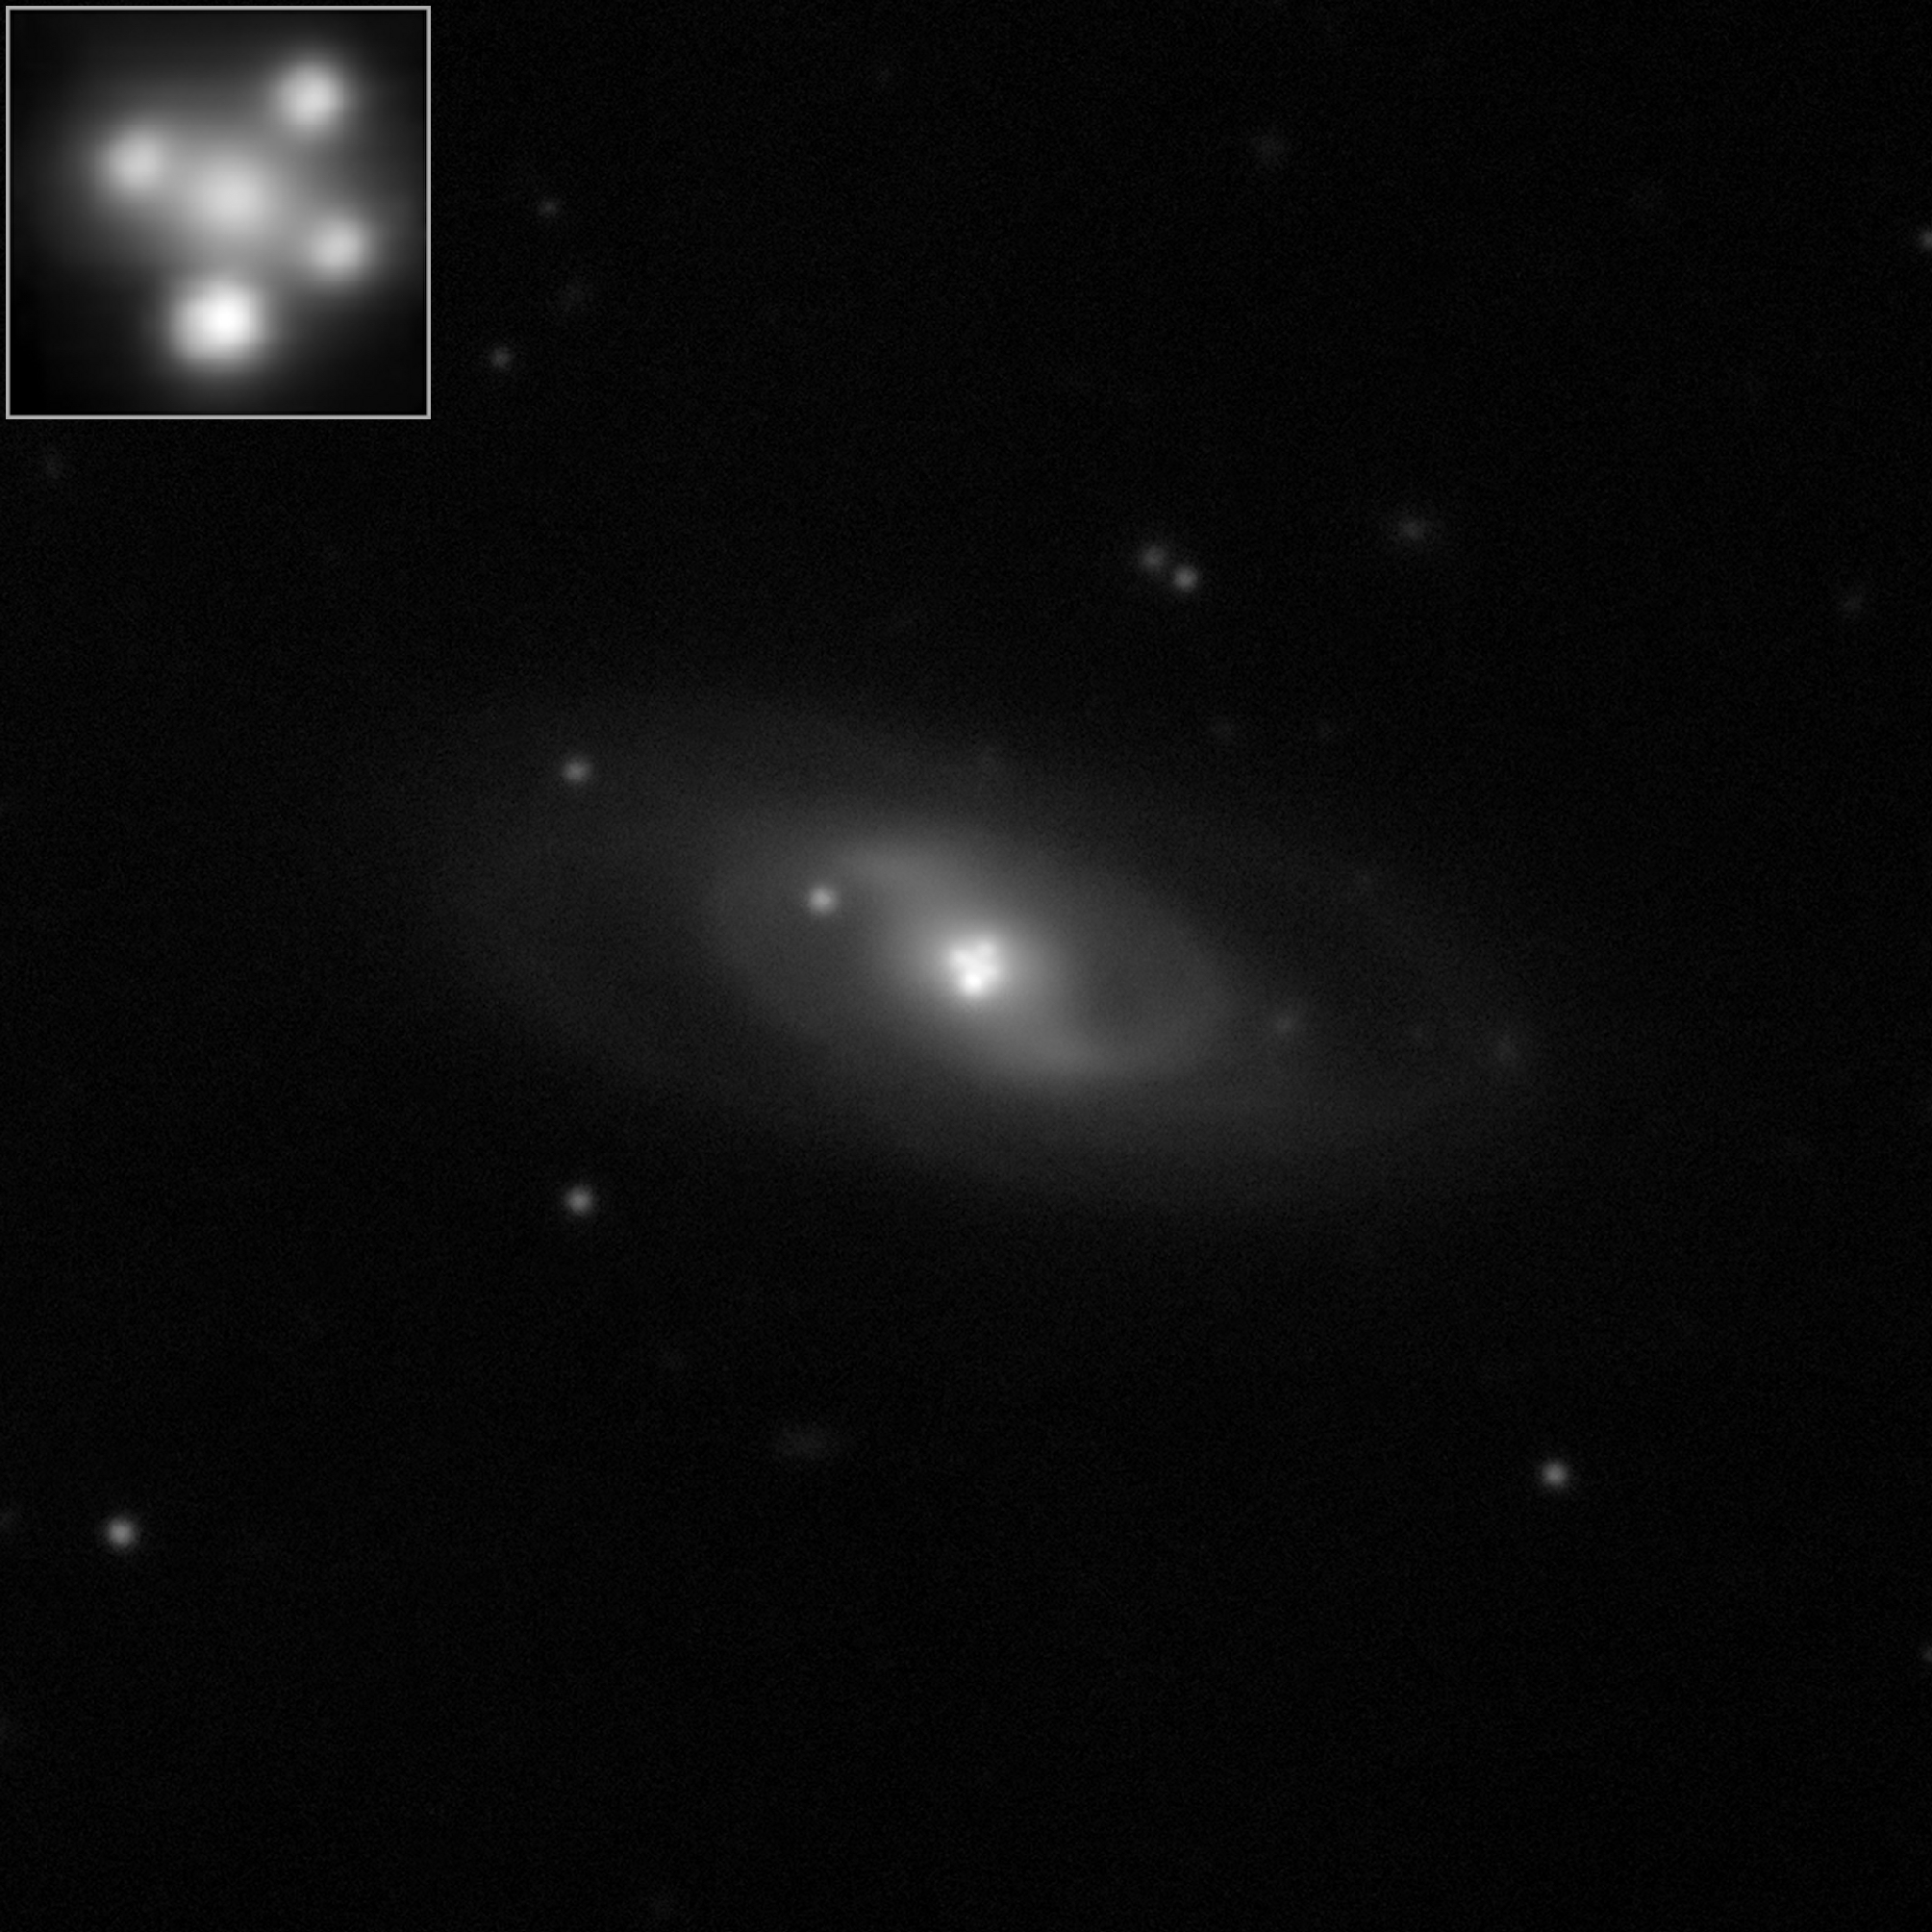 Quasare: Einstein Cross Quasar bei 8 Mrd Lj Entfernung.